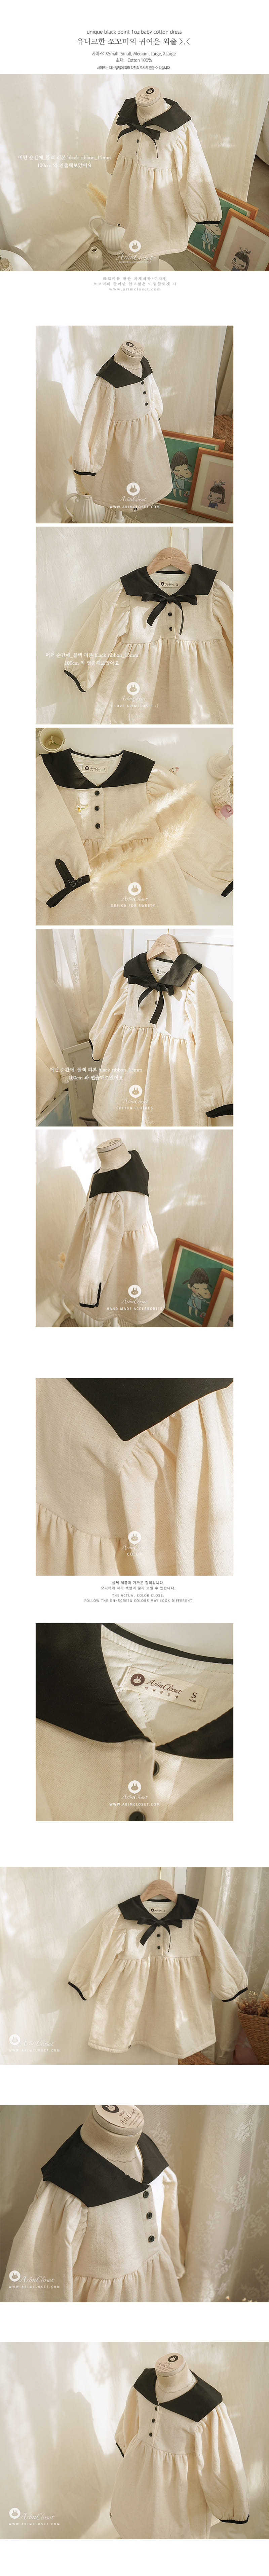 Arim Closet - Korean Children Fashion - #fashionkids - Unique Black Point Baby C Dress